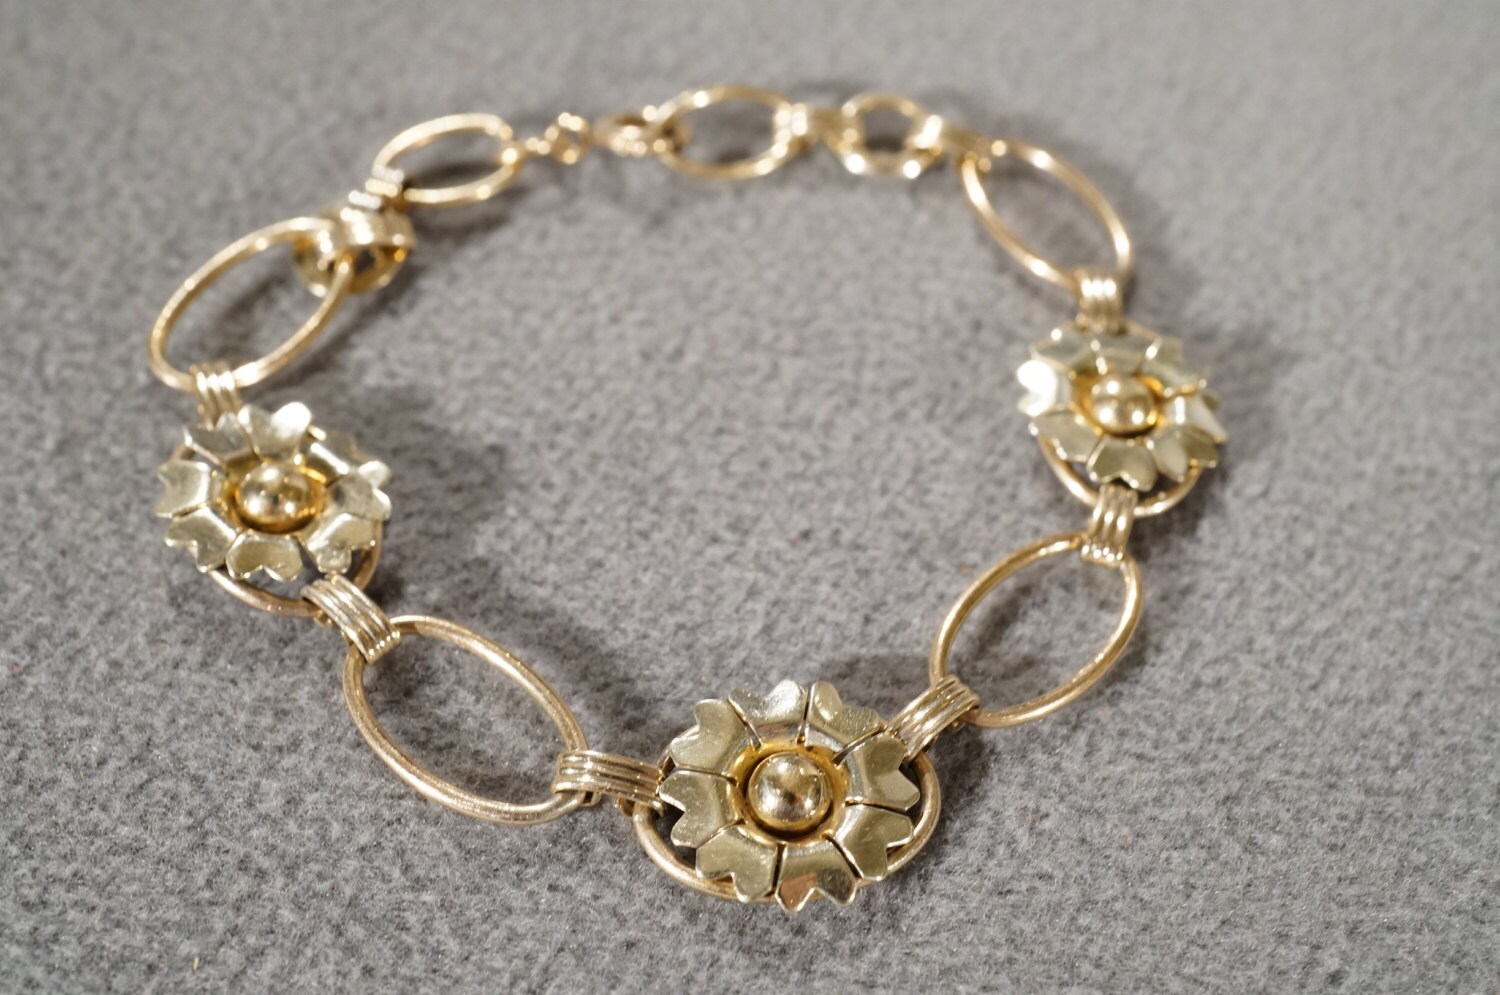 vintage 12 karat gold filled bracelet with large open links